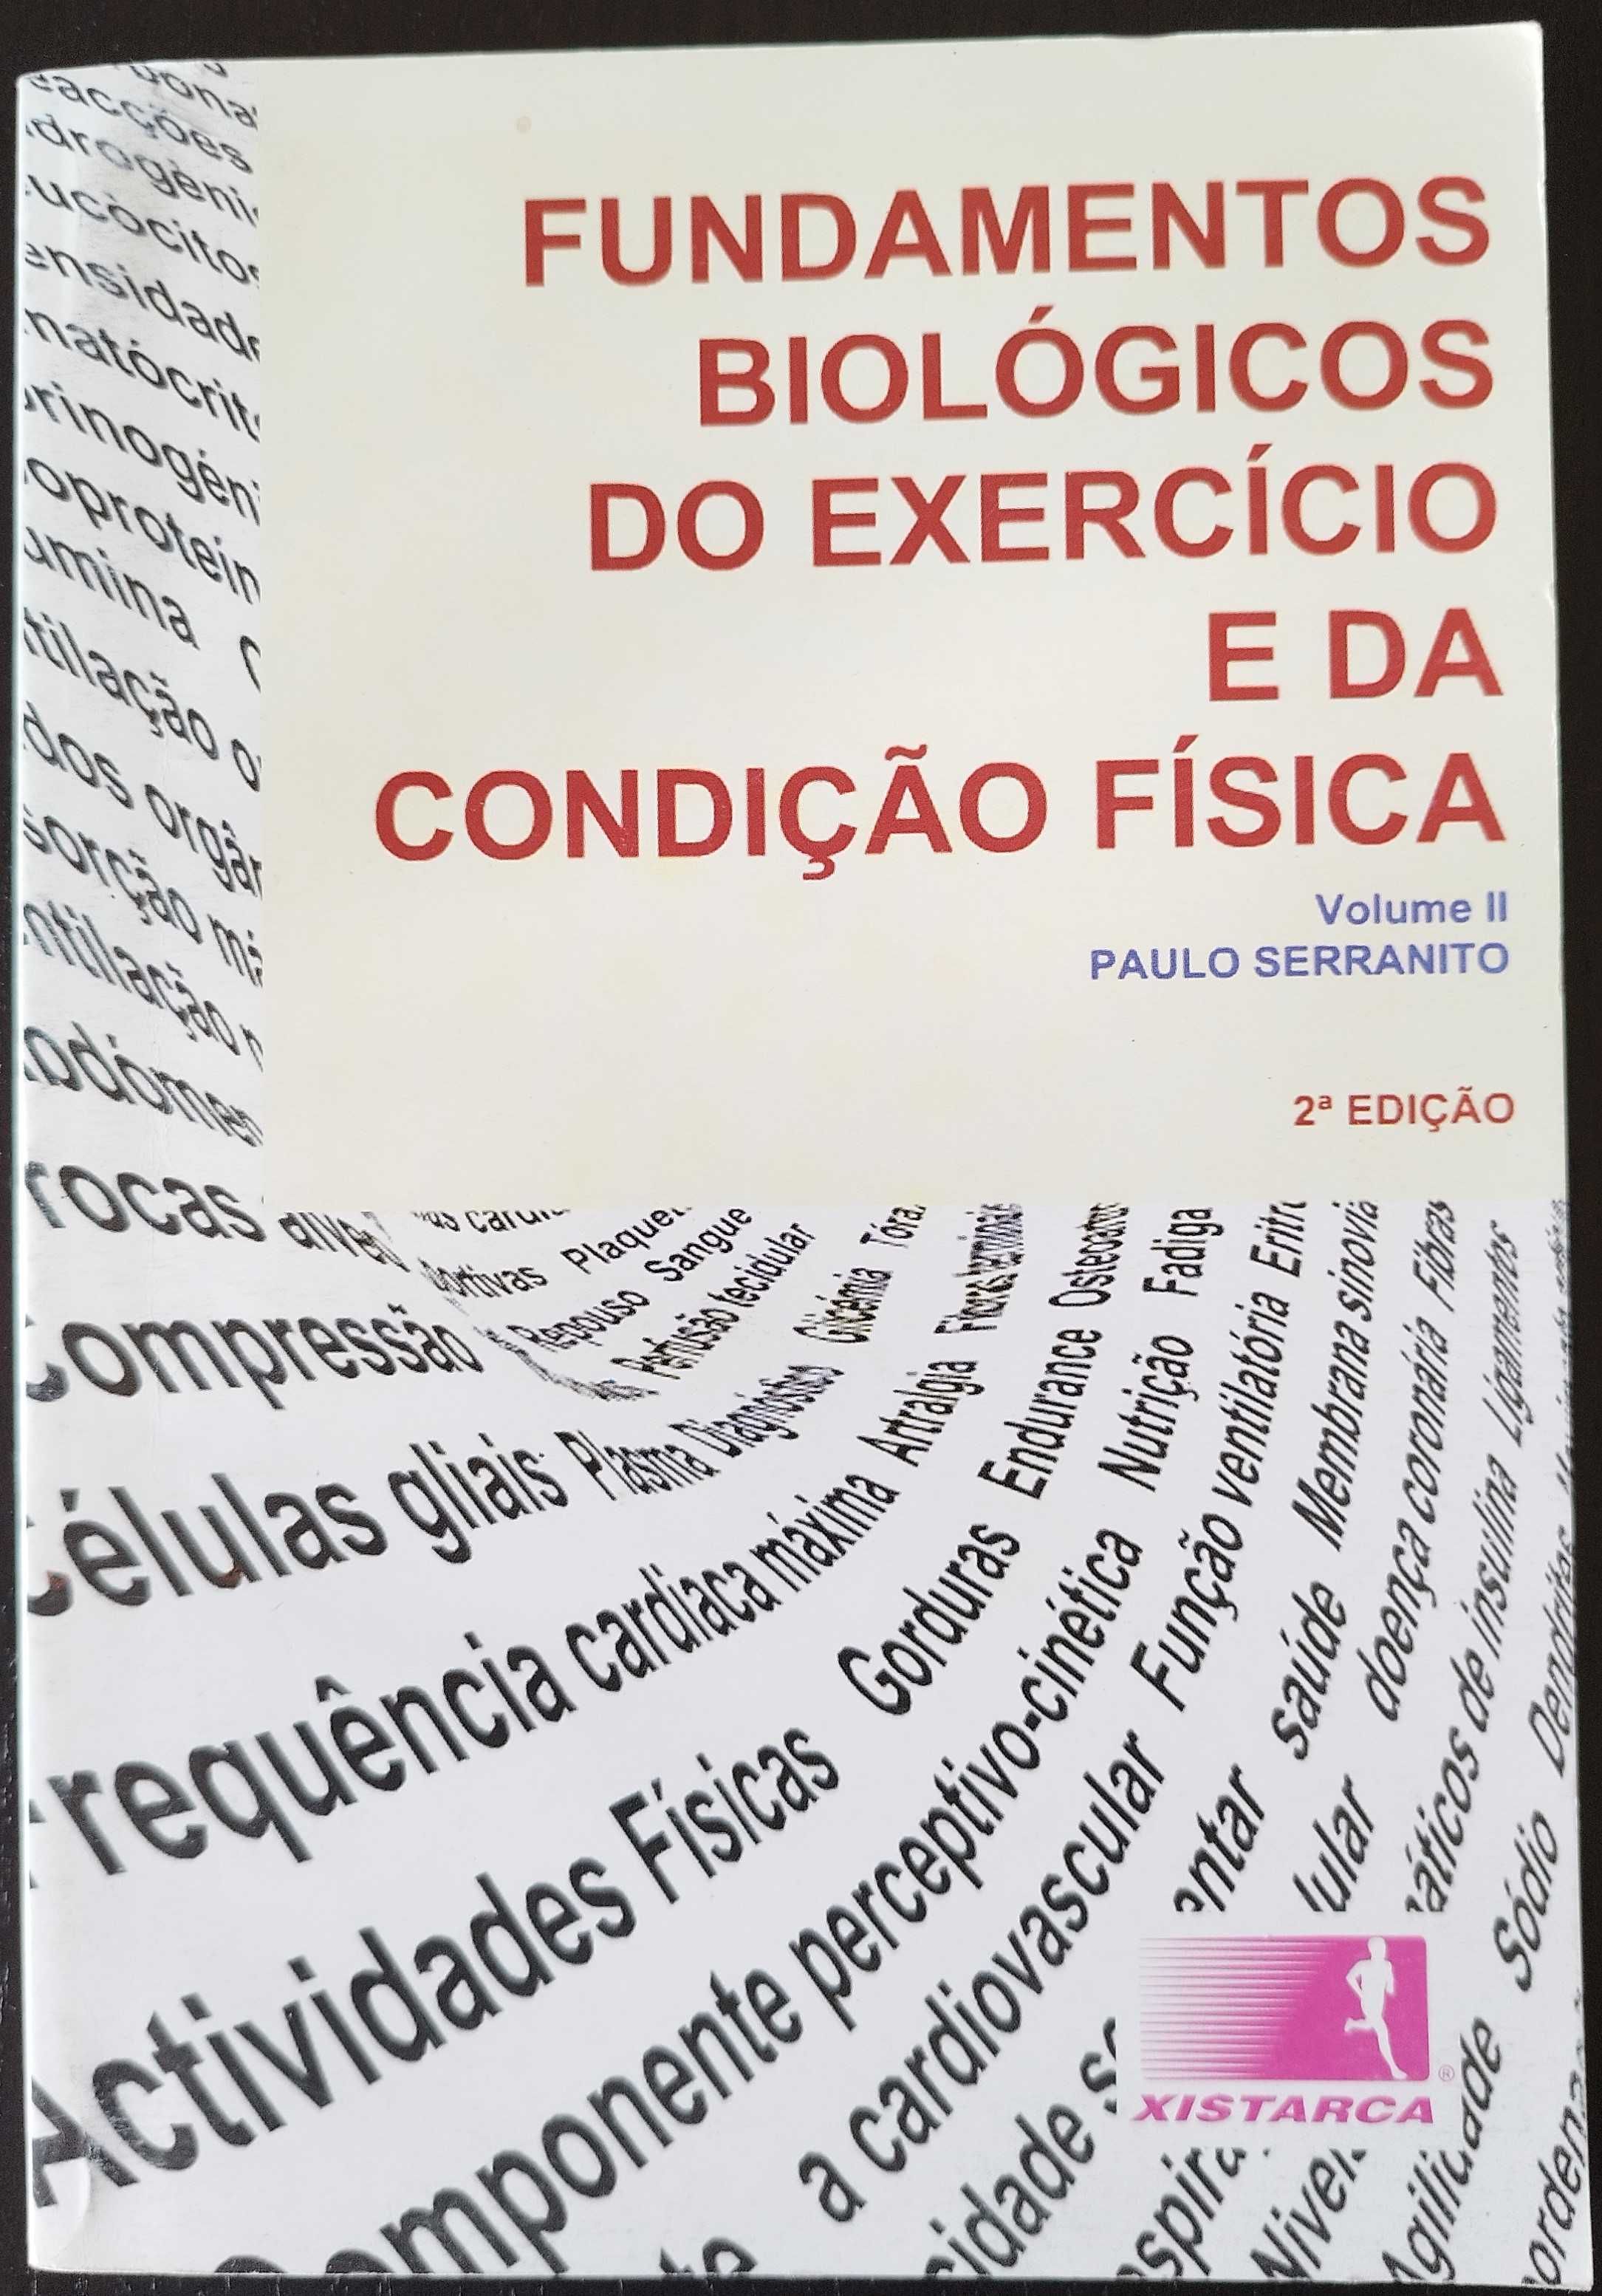 Fundam. Bio. do Exerc. e da Cond. Fís. (Paulo Serranito) Vol. I e II